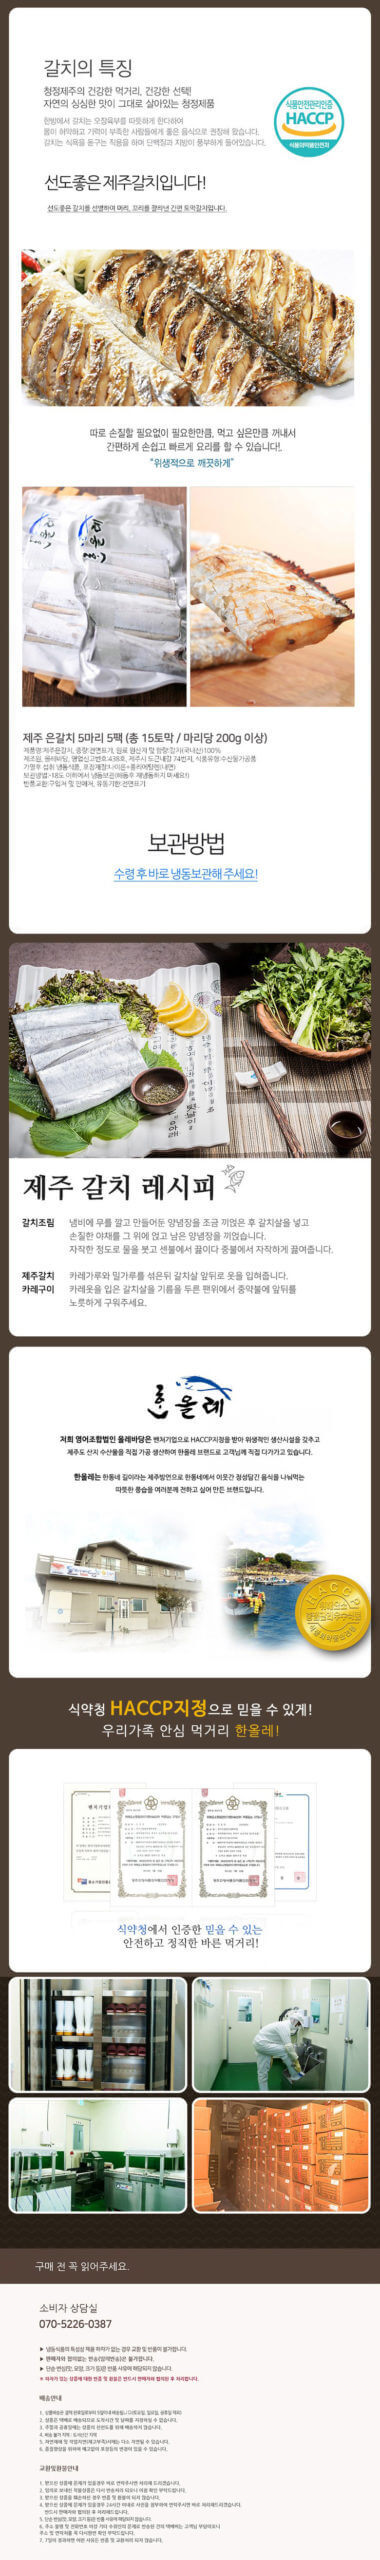 韓國食品-제주 은갈치 300g